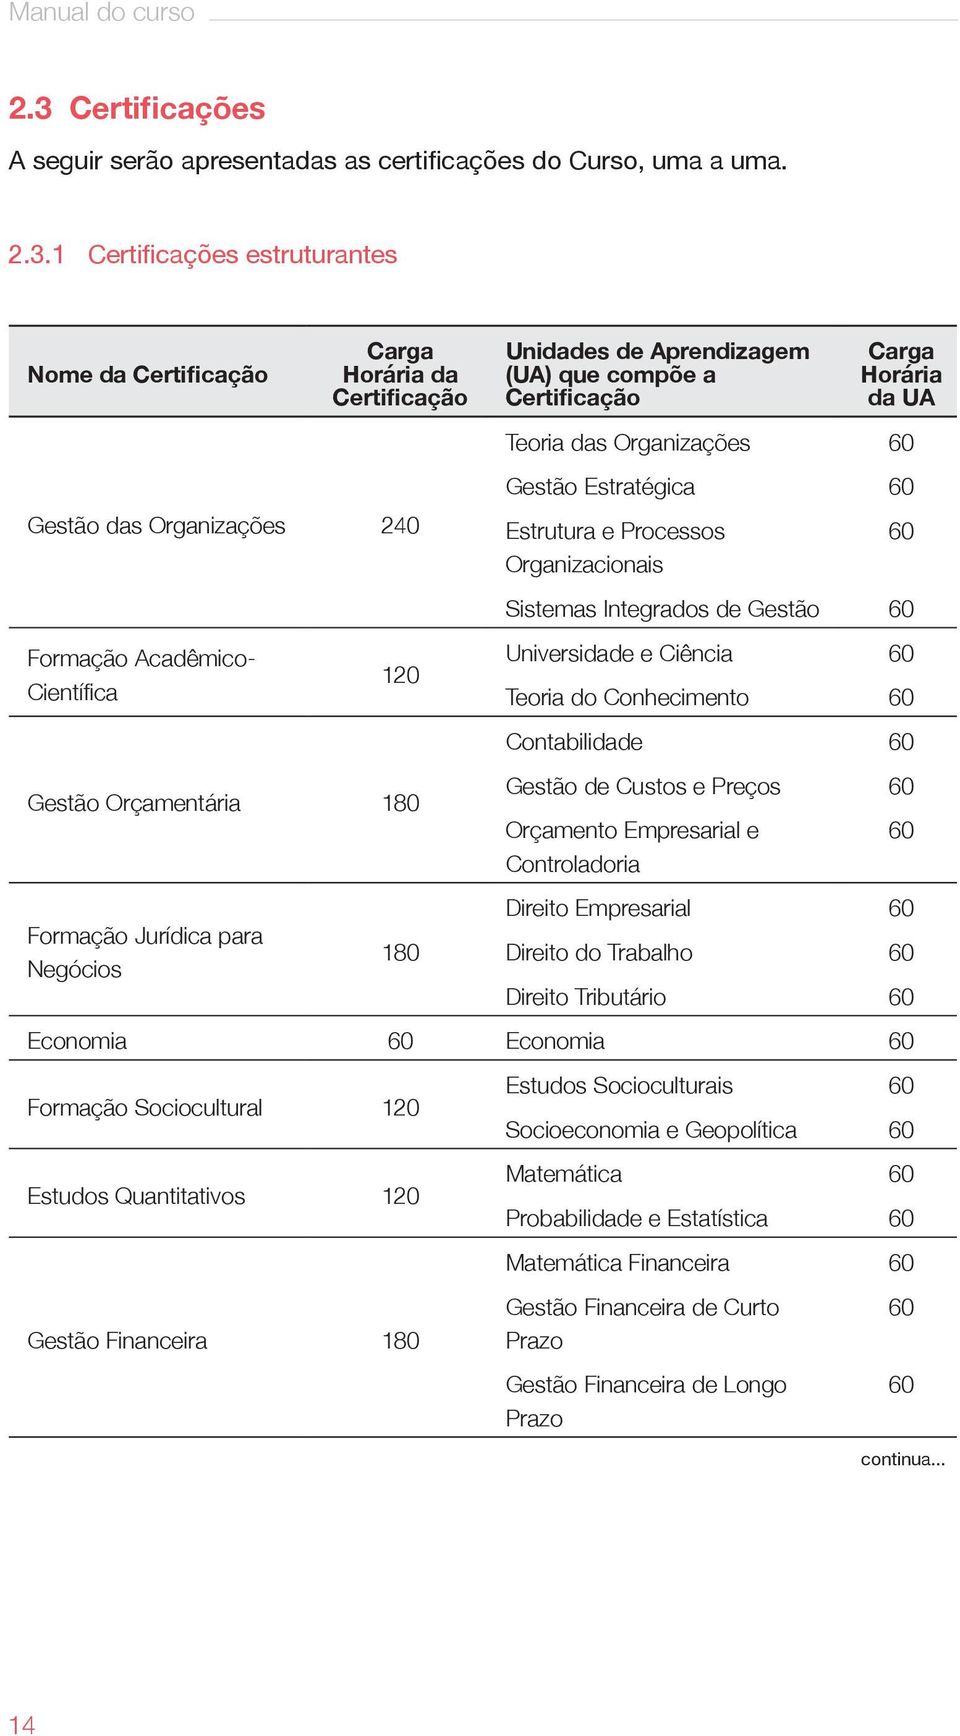 1 Certificações estruturantes Nome da Certificação Carga Horária da Certificação Gestão das Organizações 240 Formação Acadêmico- Científica 120 Gestão Orçamentária 180 Formação Jurídica para Negócios